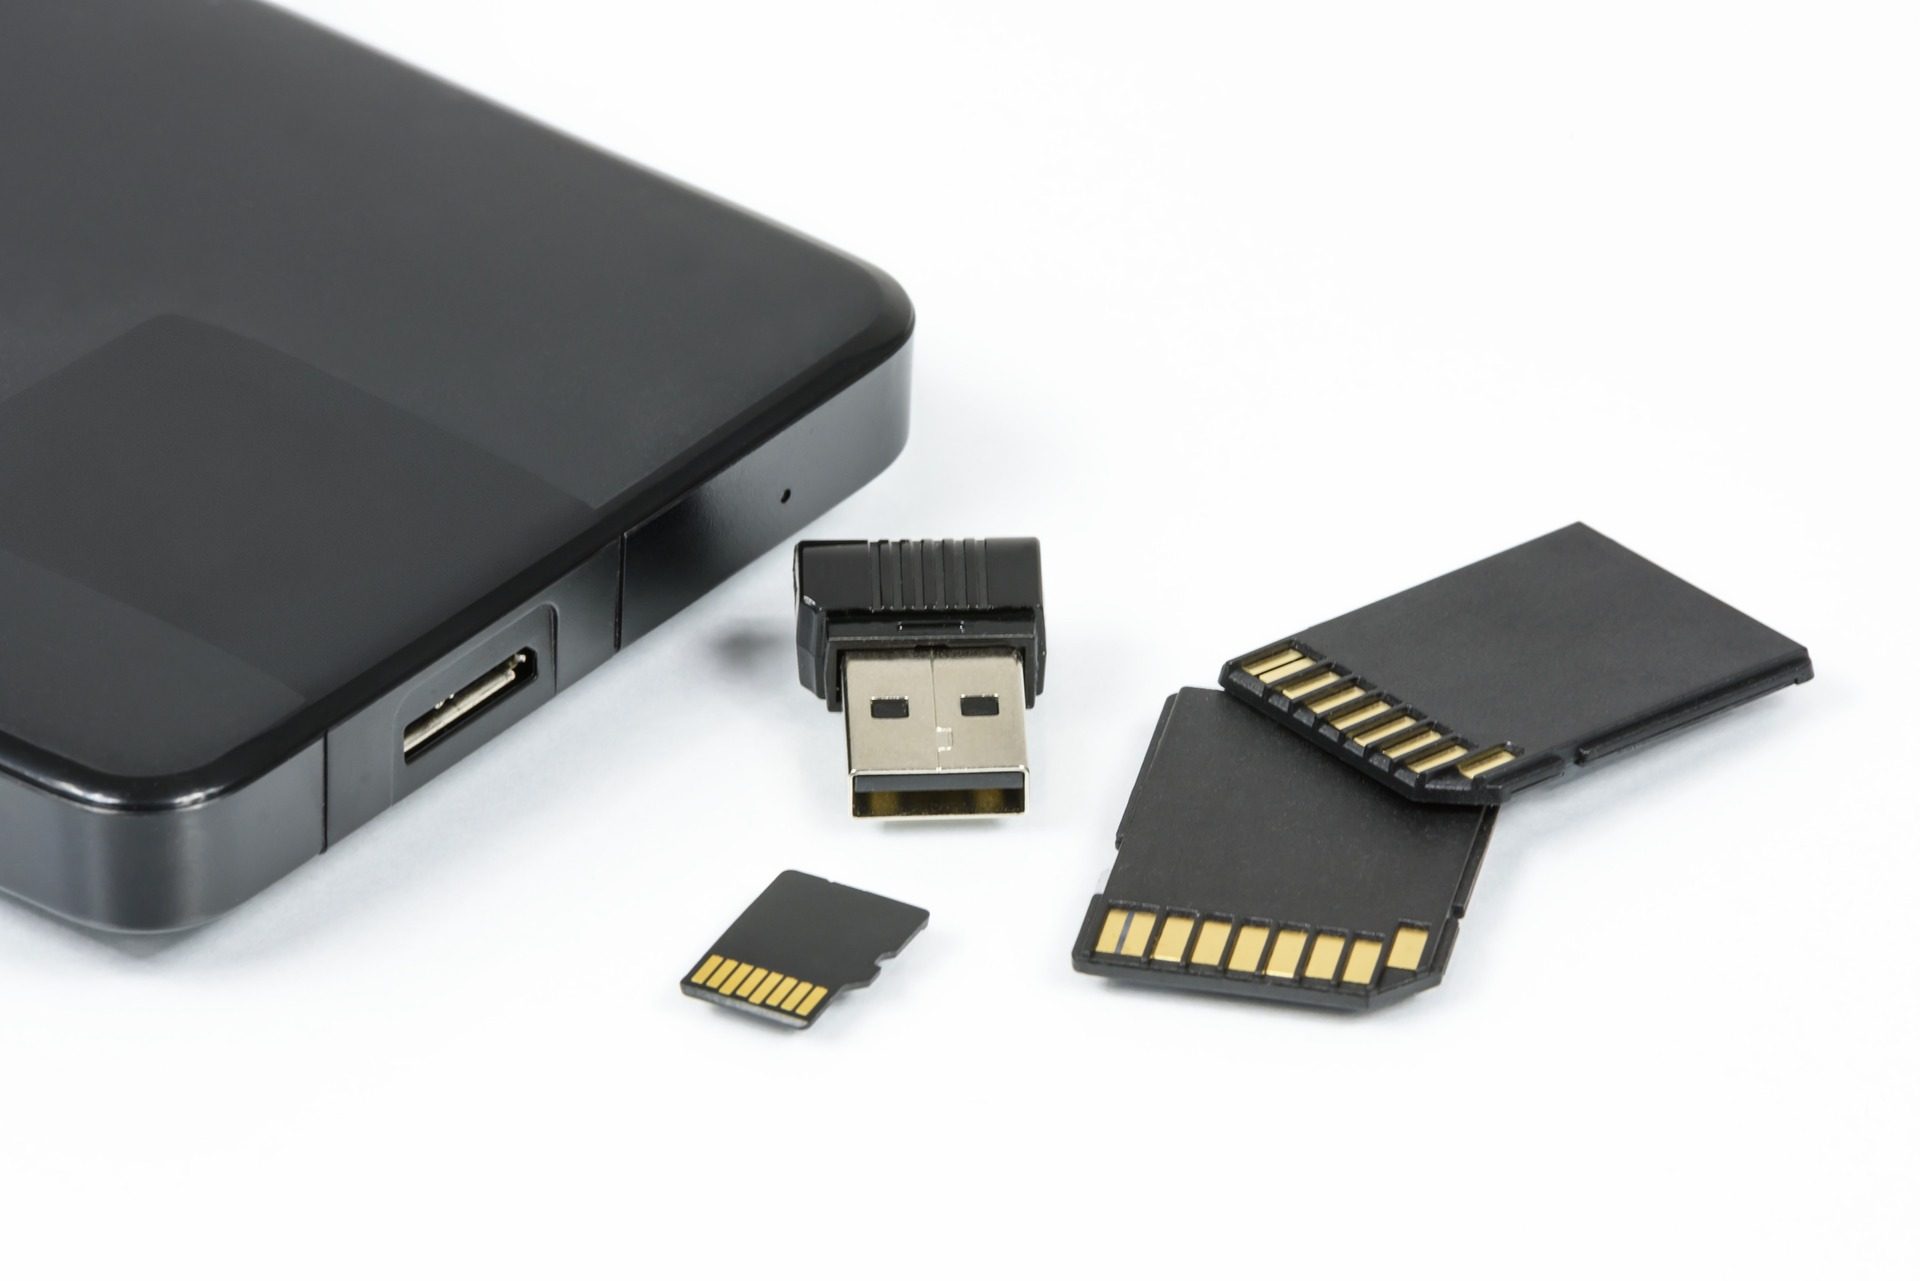 Utiliser son iPhone comme une cle USB / Disque dur externe [IOS